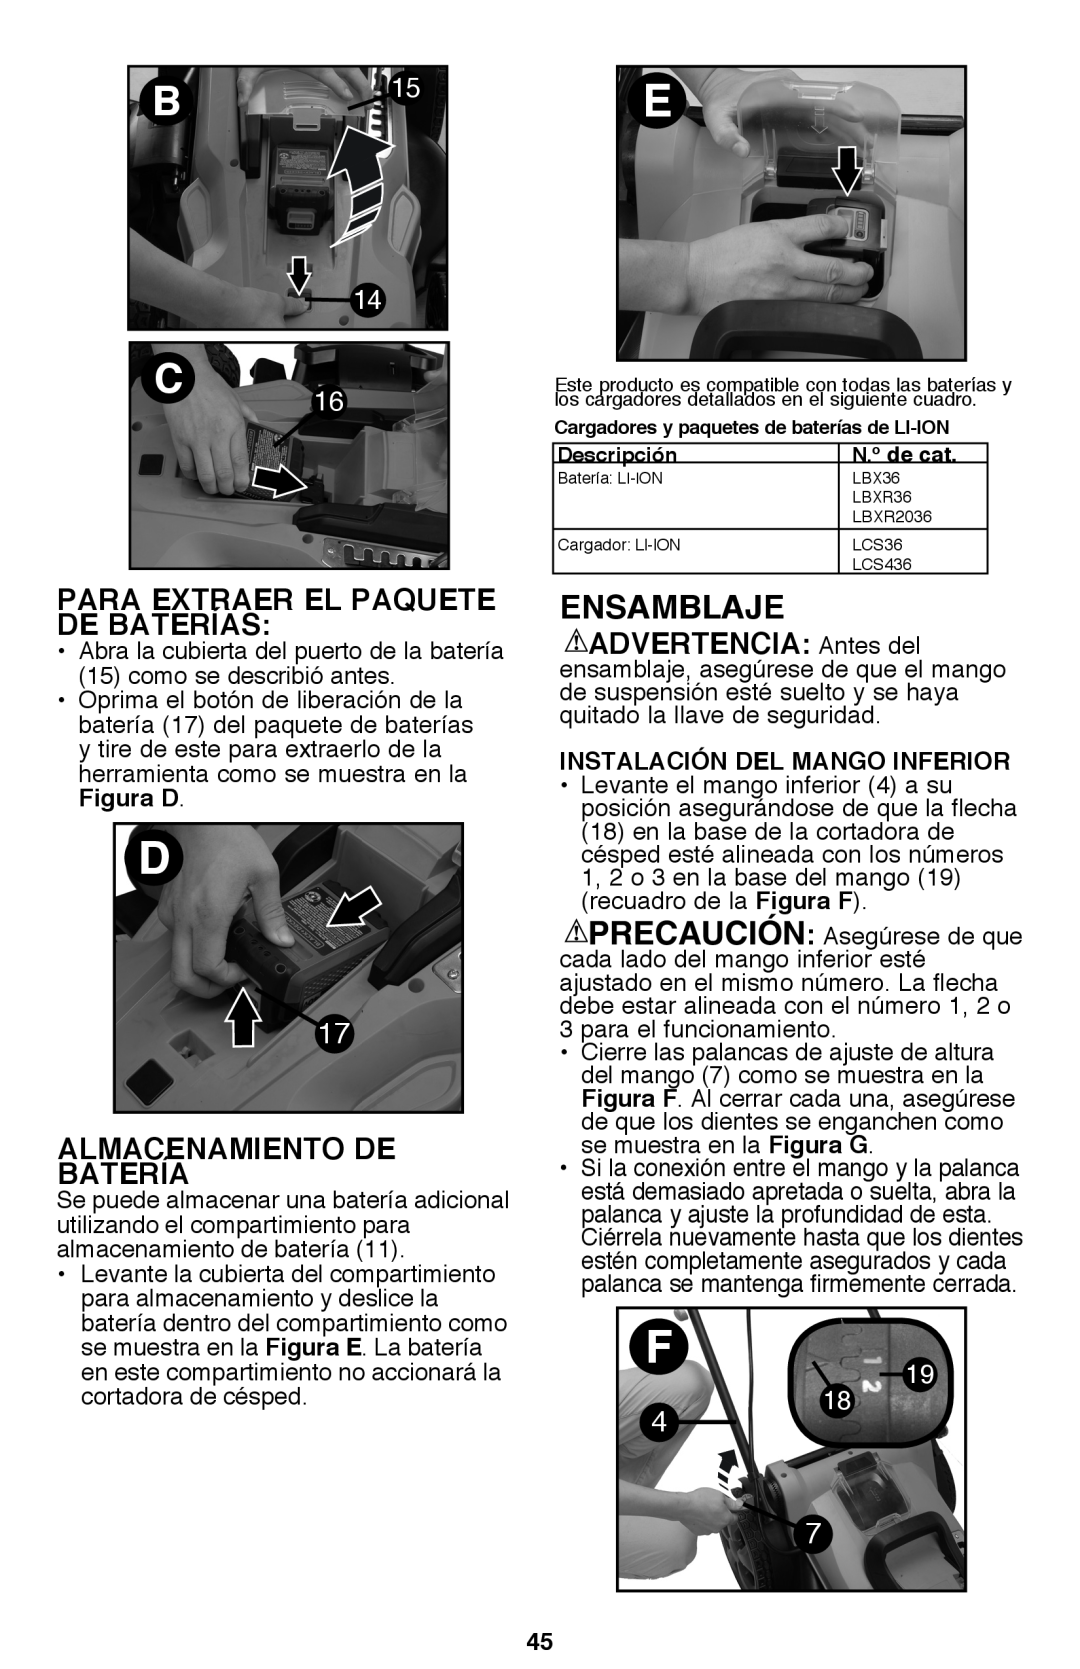 Black & Decker CM2040 instruction manual Ensamblaje, Para Extraer El Paquete De Baterías , Almacenamiento De Batería 